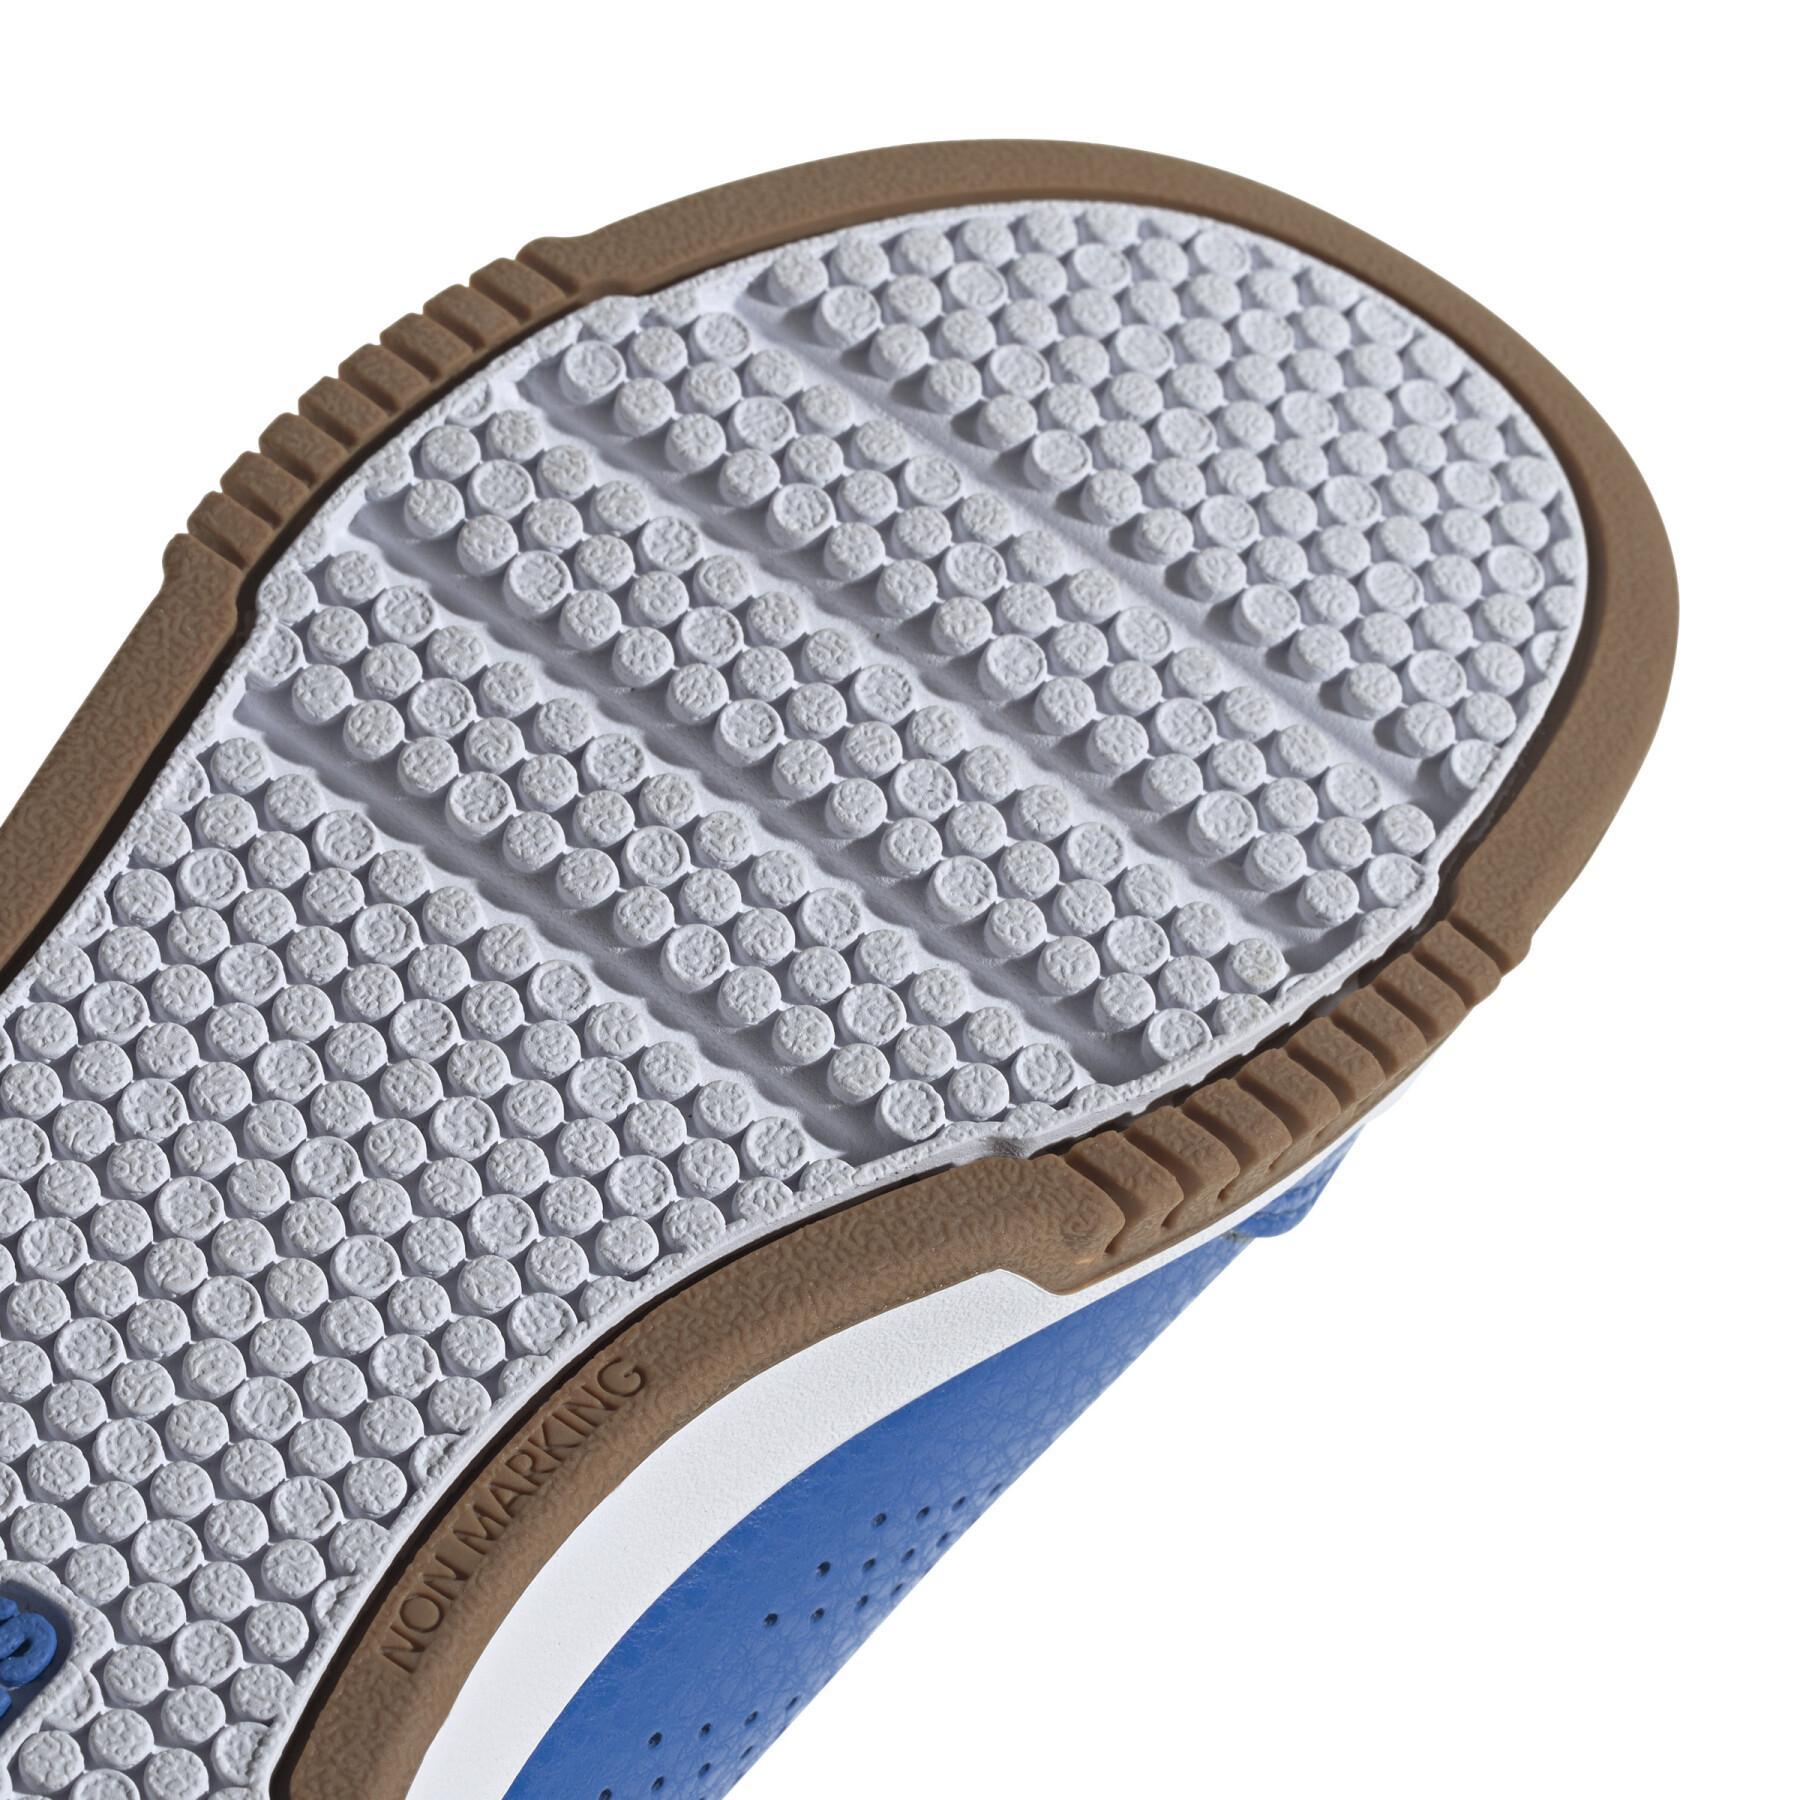 Zapatillas de running para niños adidas Tensaur Sport 2.0 K